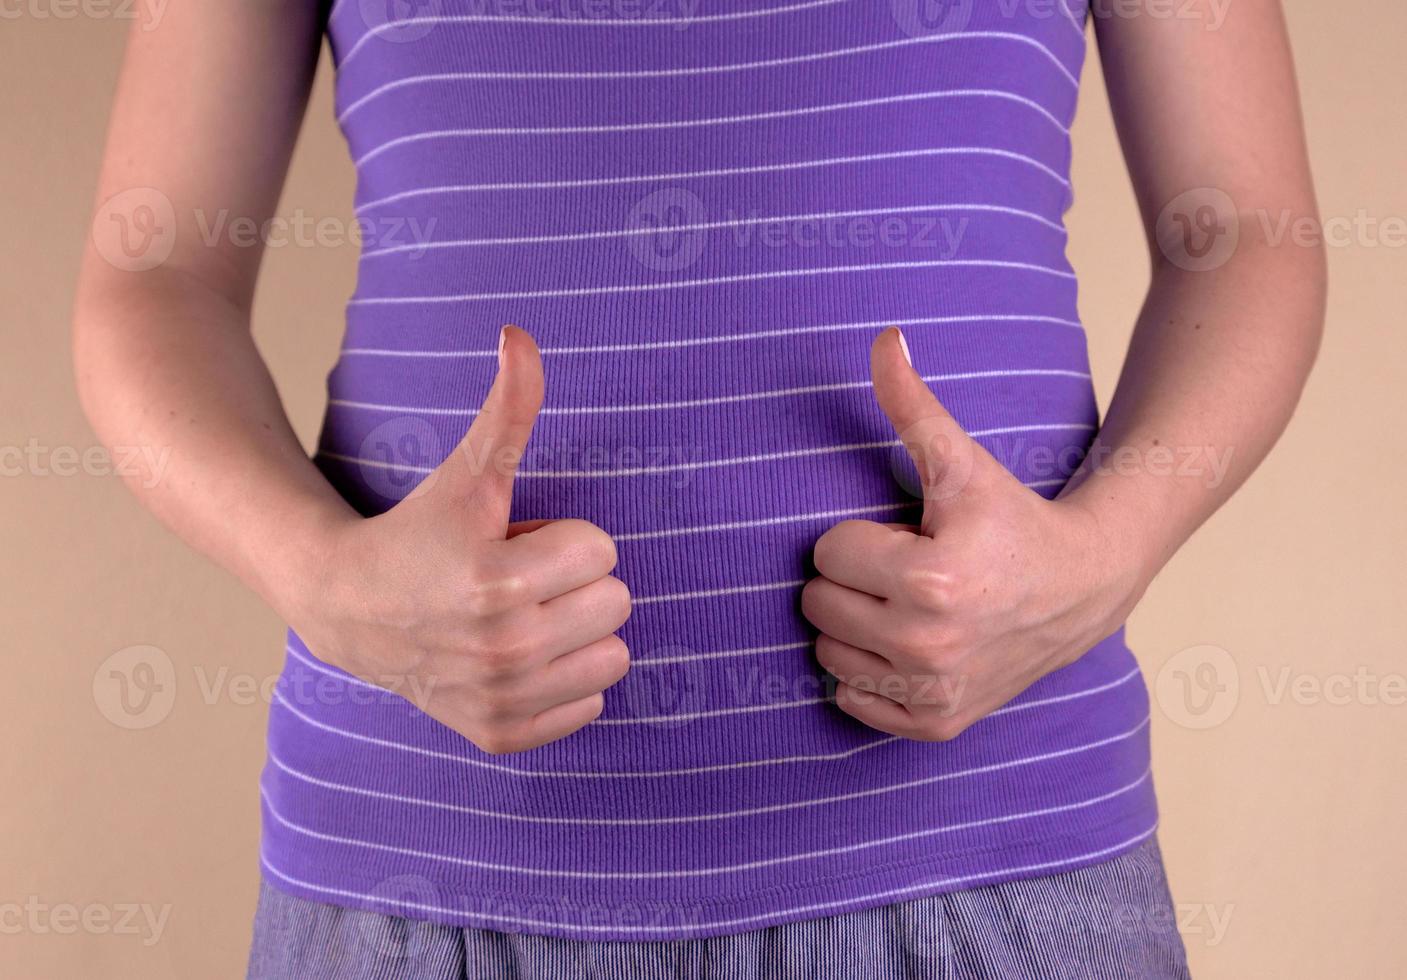 Une vue rapprochée du ventre d'une femme enceinte montre un signe similaire photo